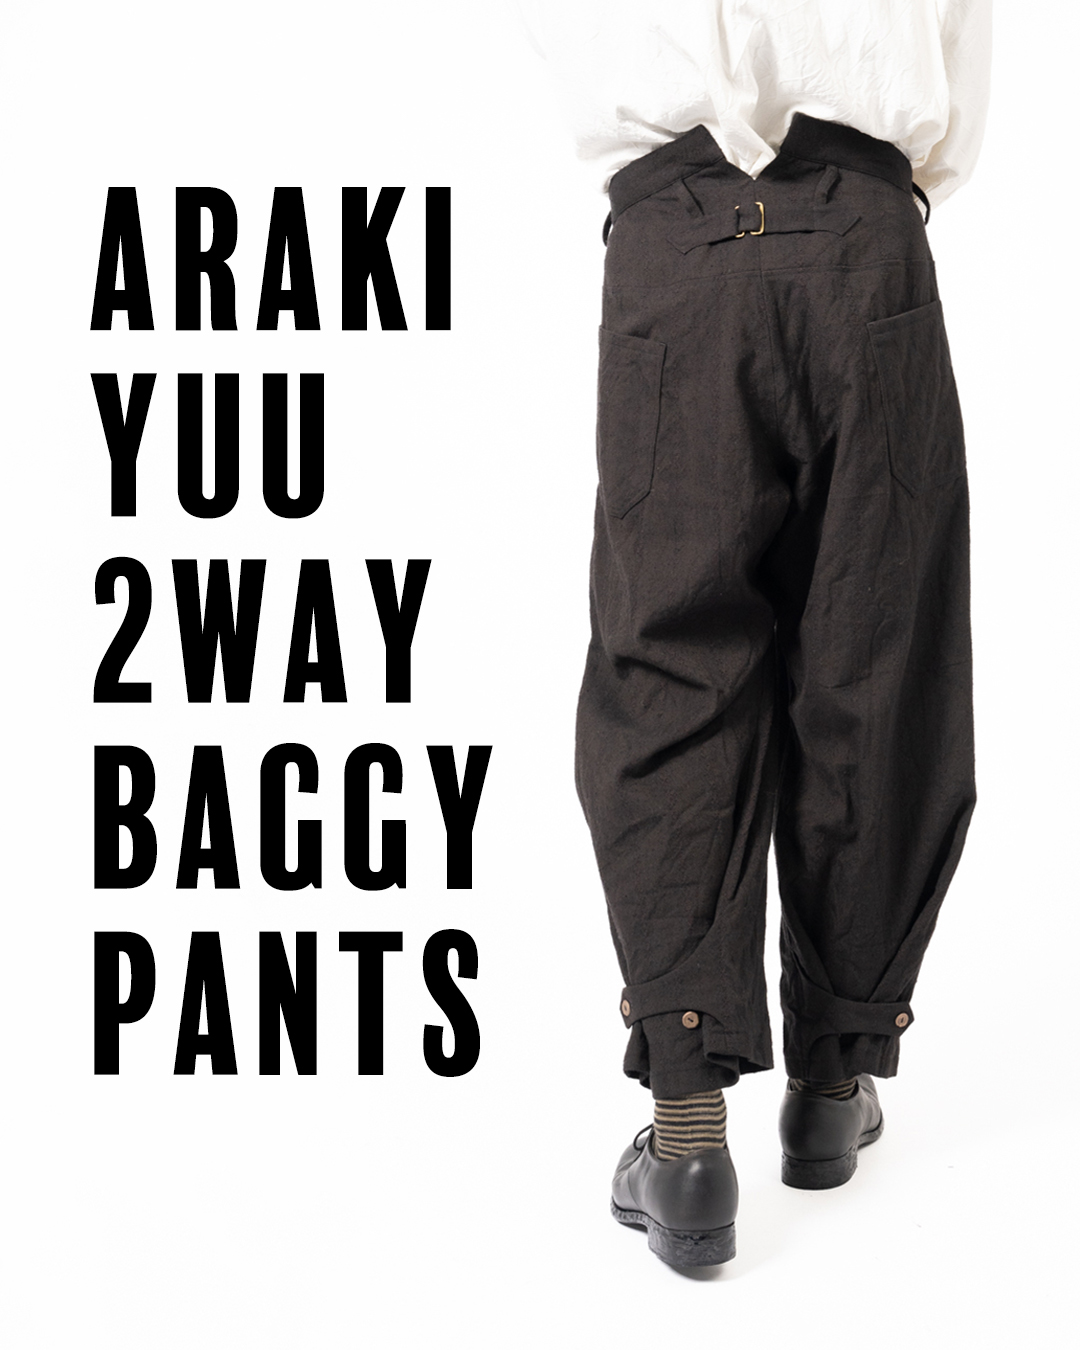 ARAKI YUU バギーパンツ | HUES 福岡セレクトショップ